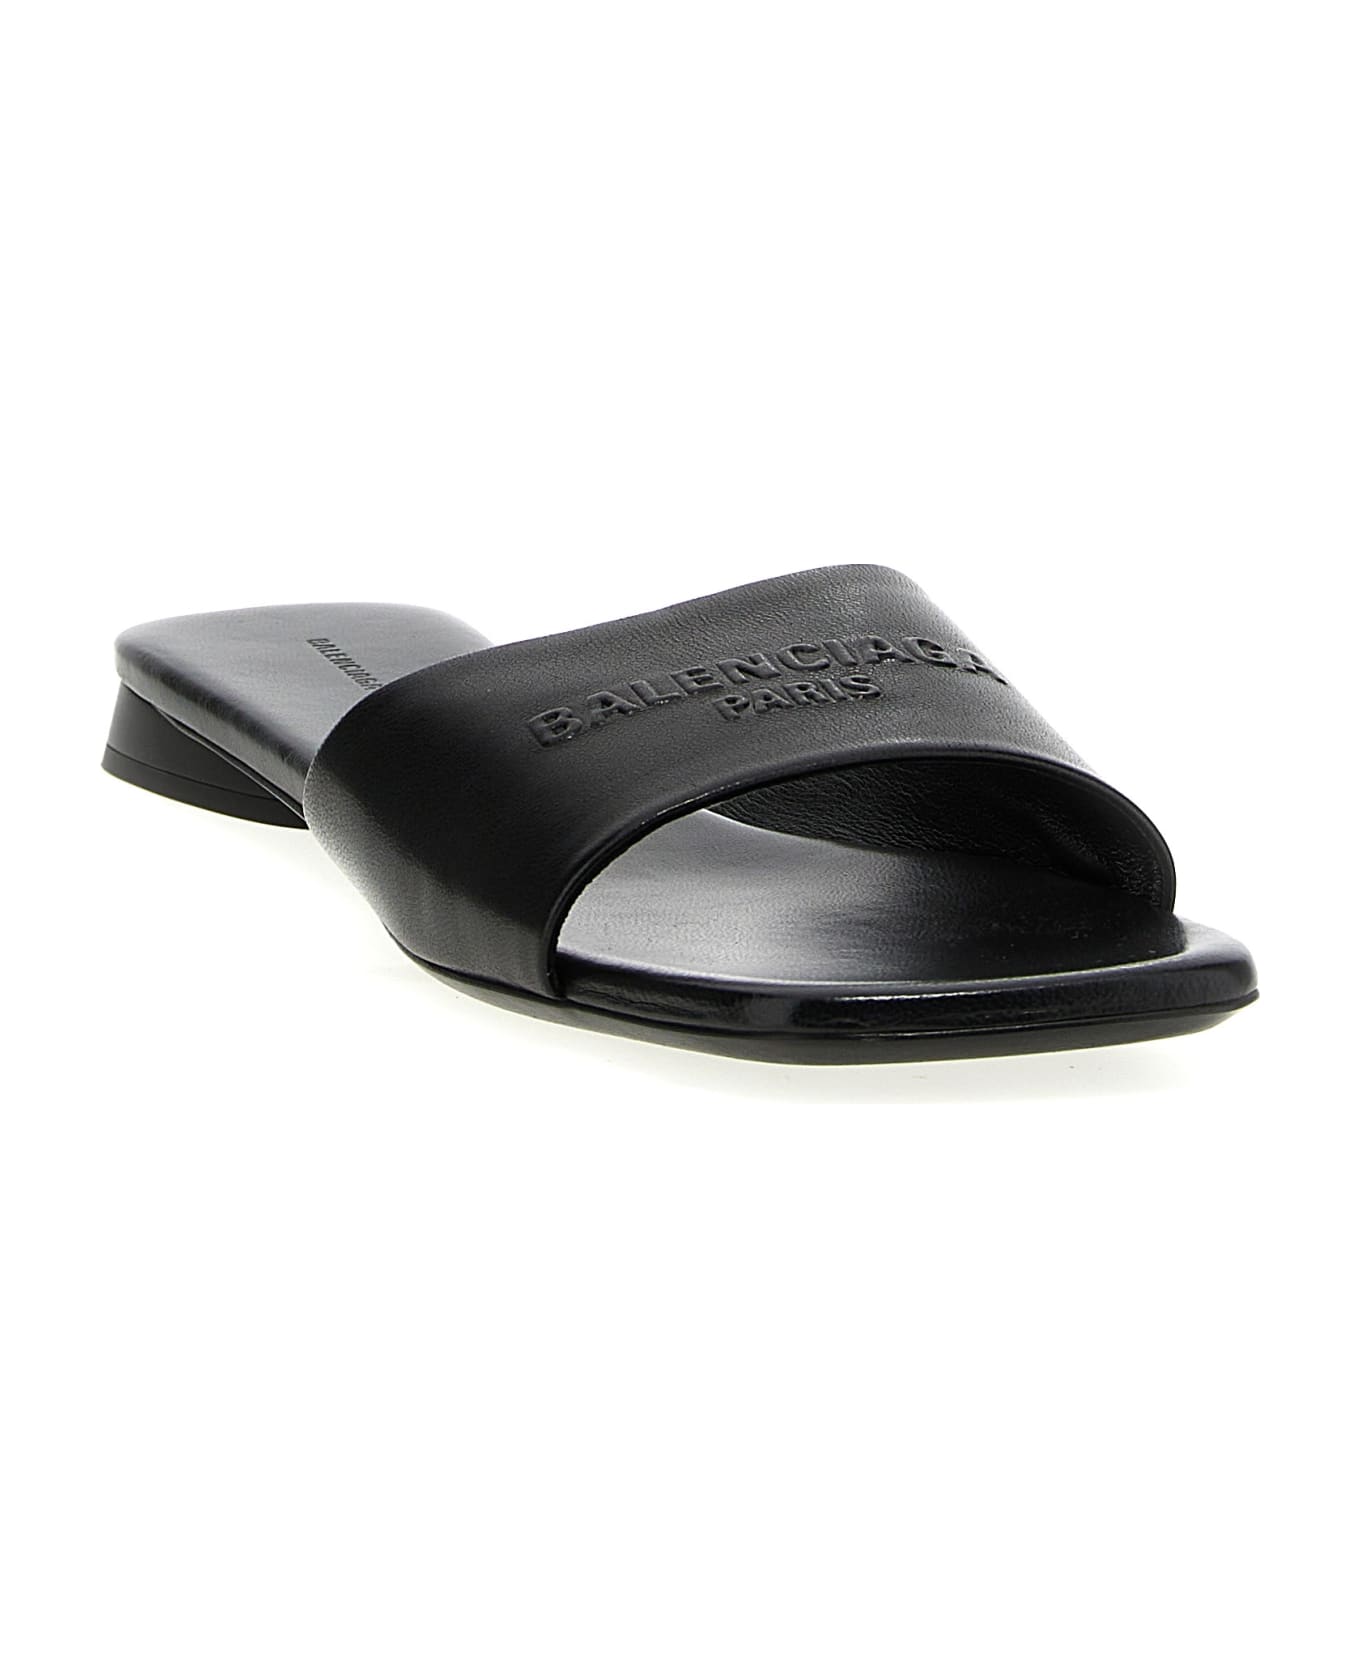 Balenciaga 'duty Free' Sandals - Black   サンダル